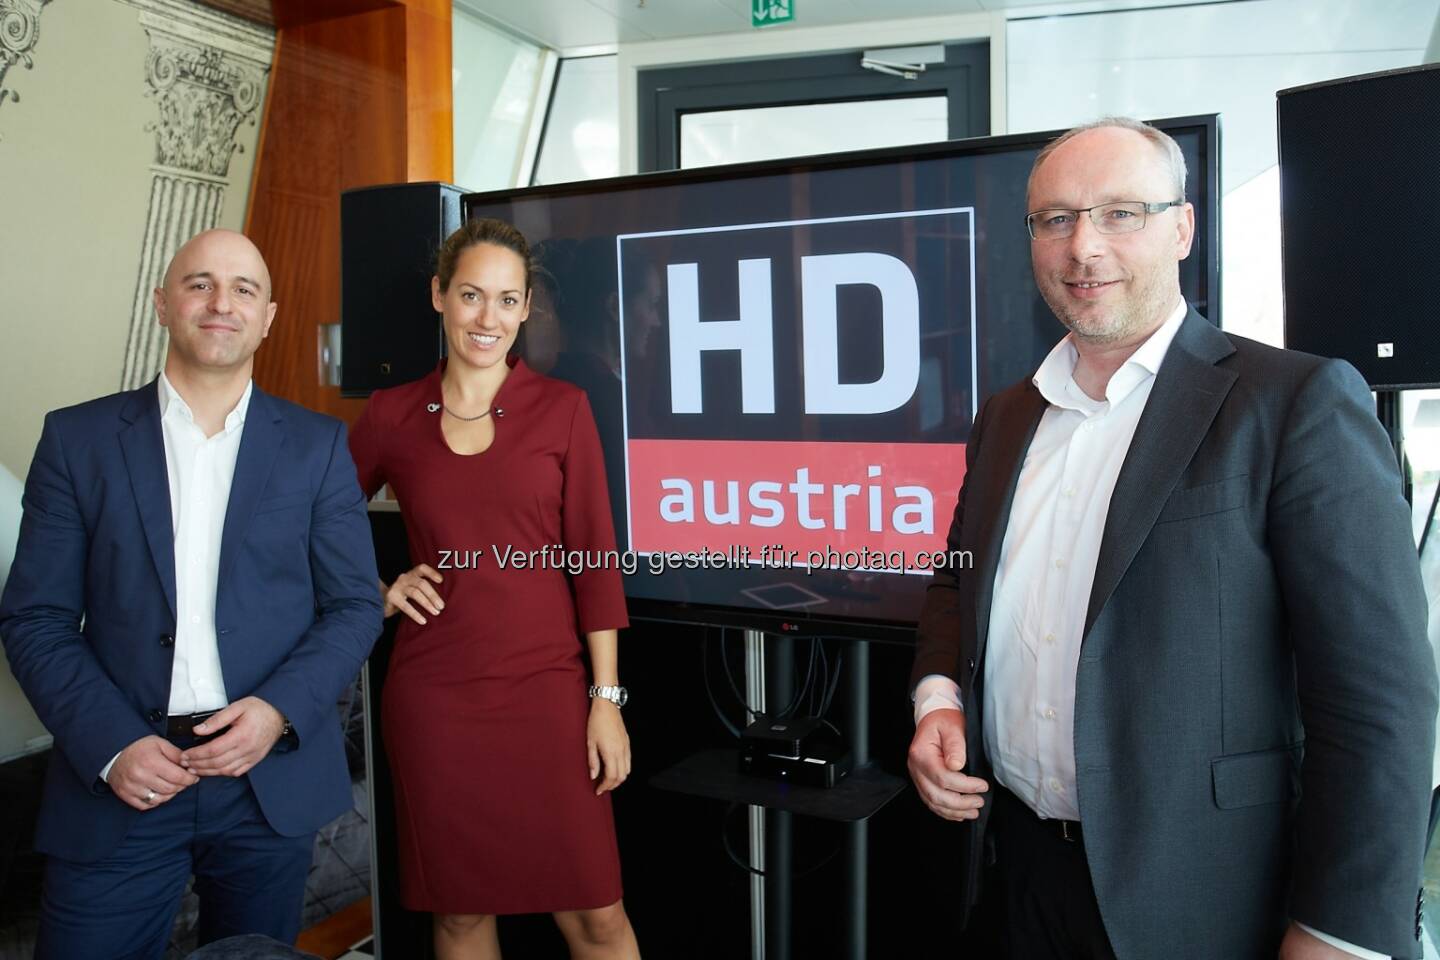 Matthias Schwankl (Head of Product Management der M7 Group), Bianca Schwarzjirg (Moderatorin), Martijn van Hout (Vice President der M7 Group und Country Manager für Österreich und Deutschland) : HD Austria startet im November eine eigene, unabhängige Satelliten-TV-Plattform als kostengünstige Alternative zur ORF Digital-Plattform : Darüber hinaus bietet die neue HD Austria-Plattform neue Streaming- und Video-on-Demand-Angebote : Fotocredit: Eviso Austria GmbH/APA-Fotoservice/Preiss